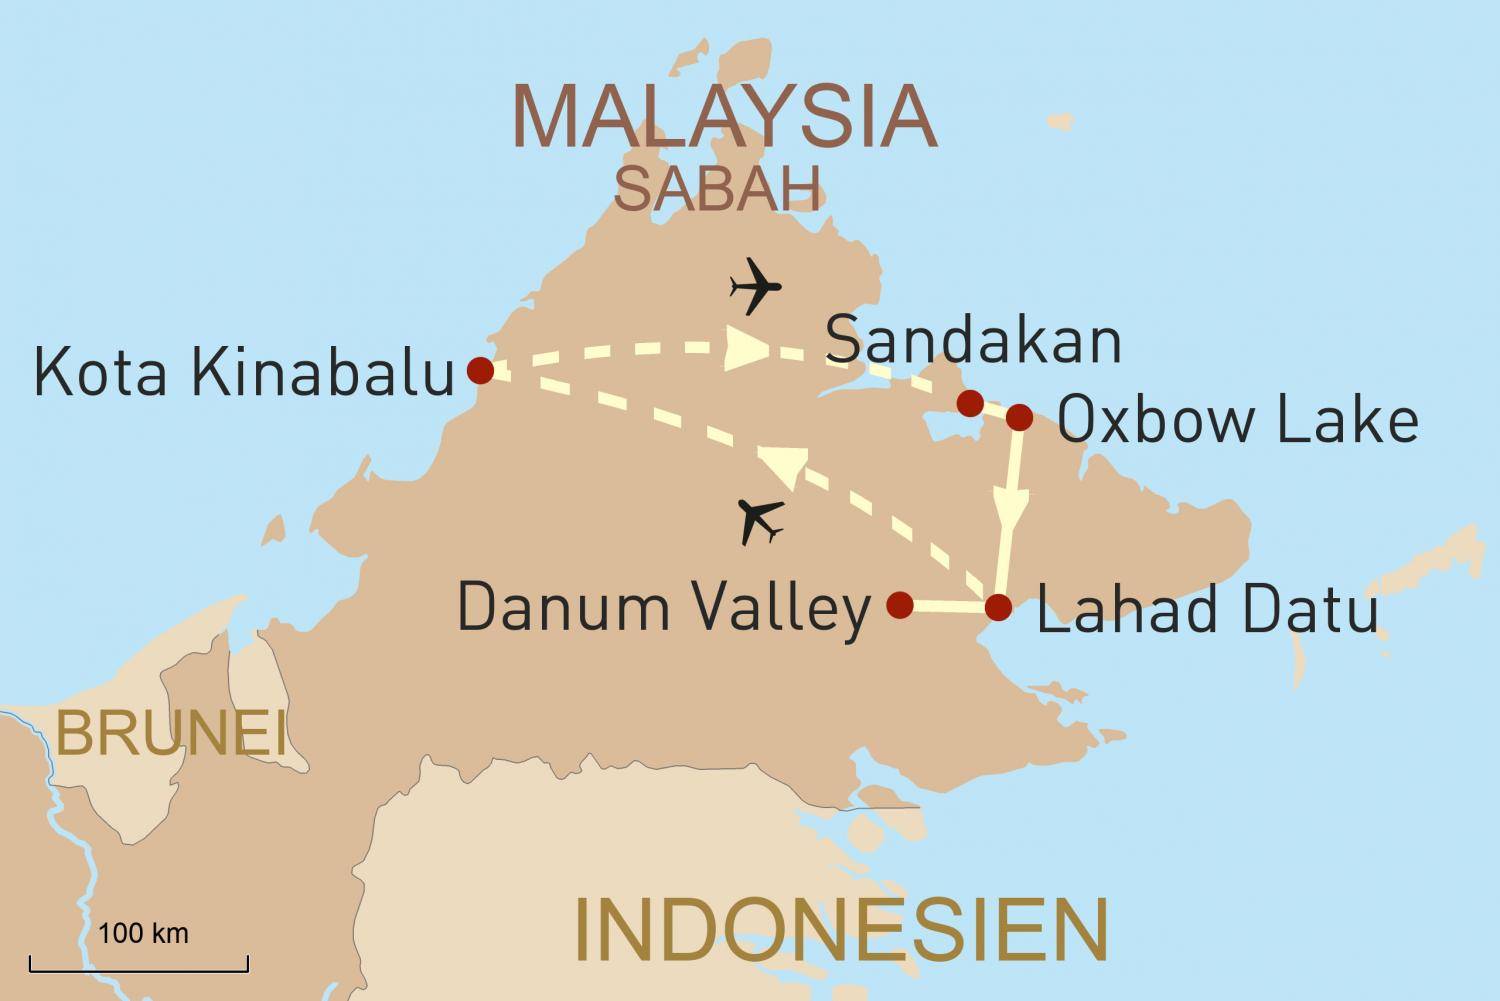 Виза в индонезию для россиян 2020, оформление туристической по прилету в аэропорту, как получить разрешение на въезд в страну для бизнеса и работы